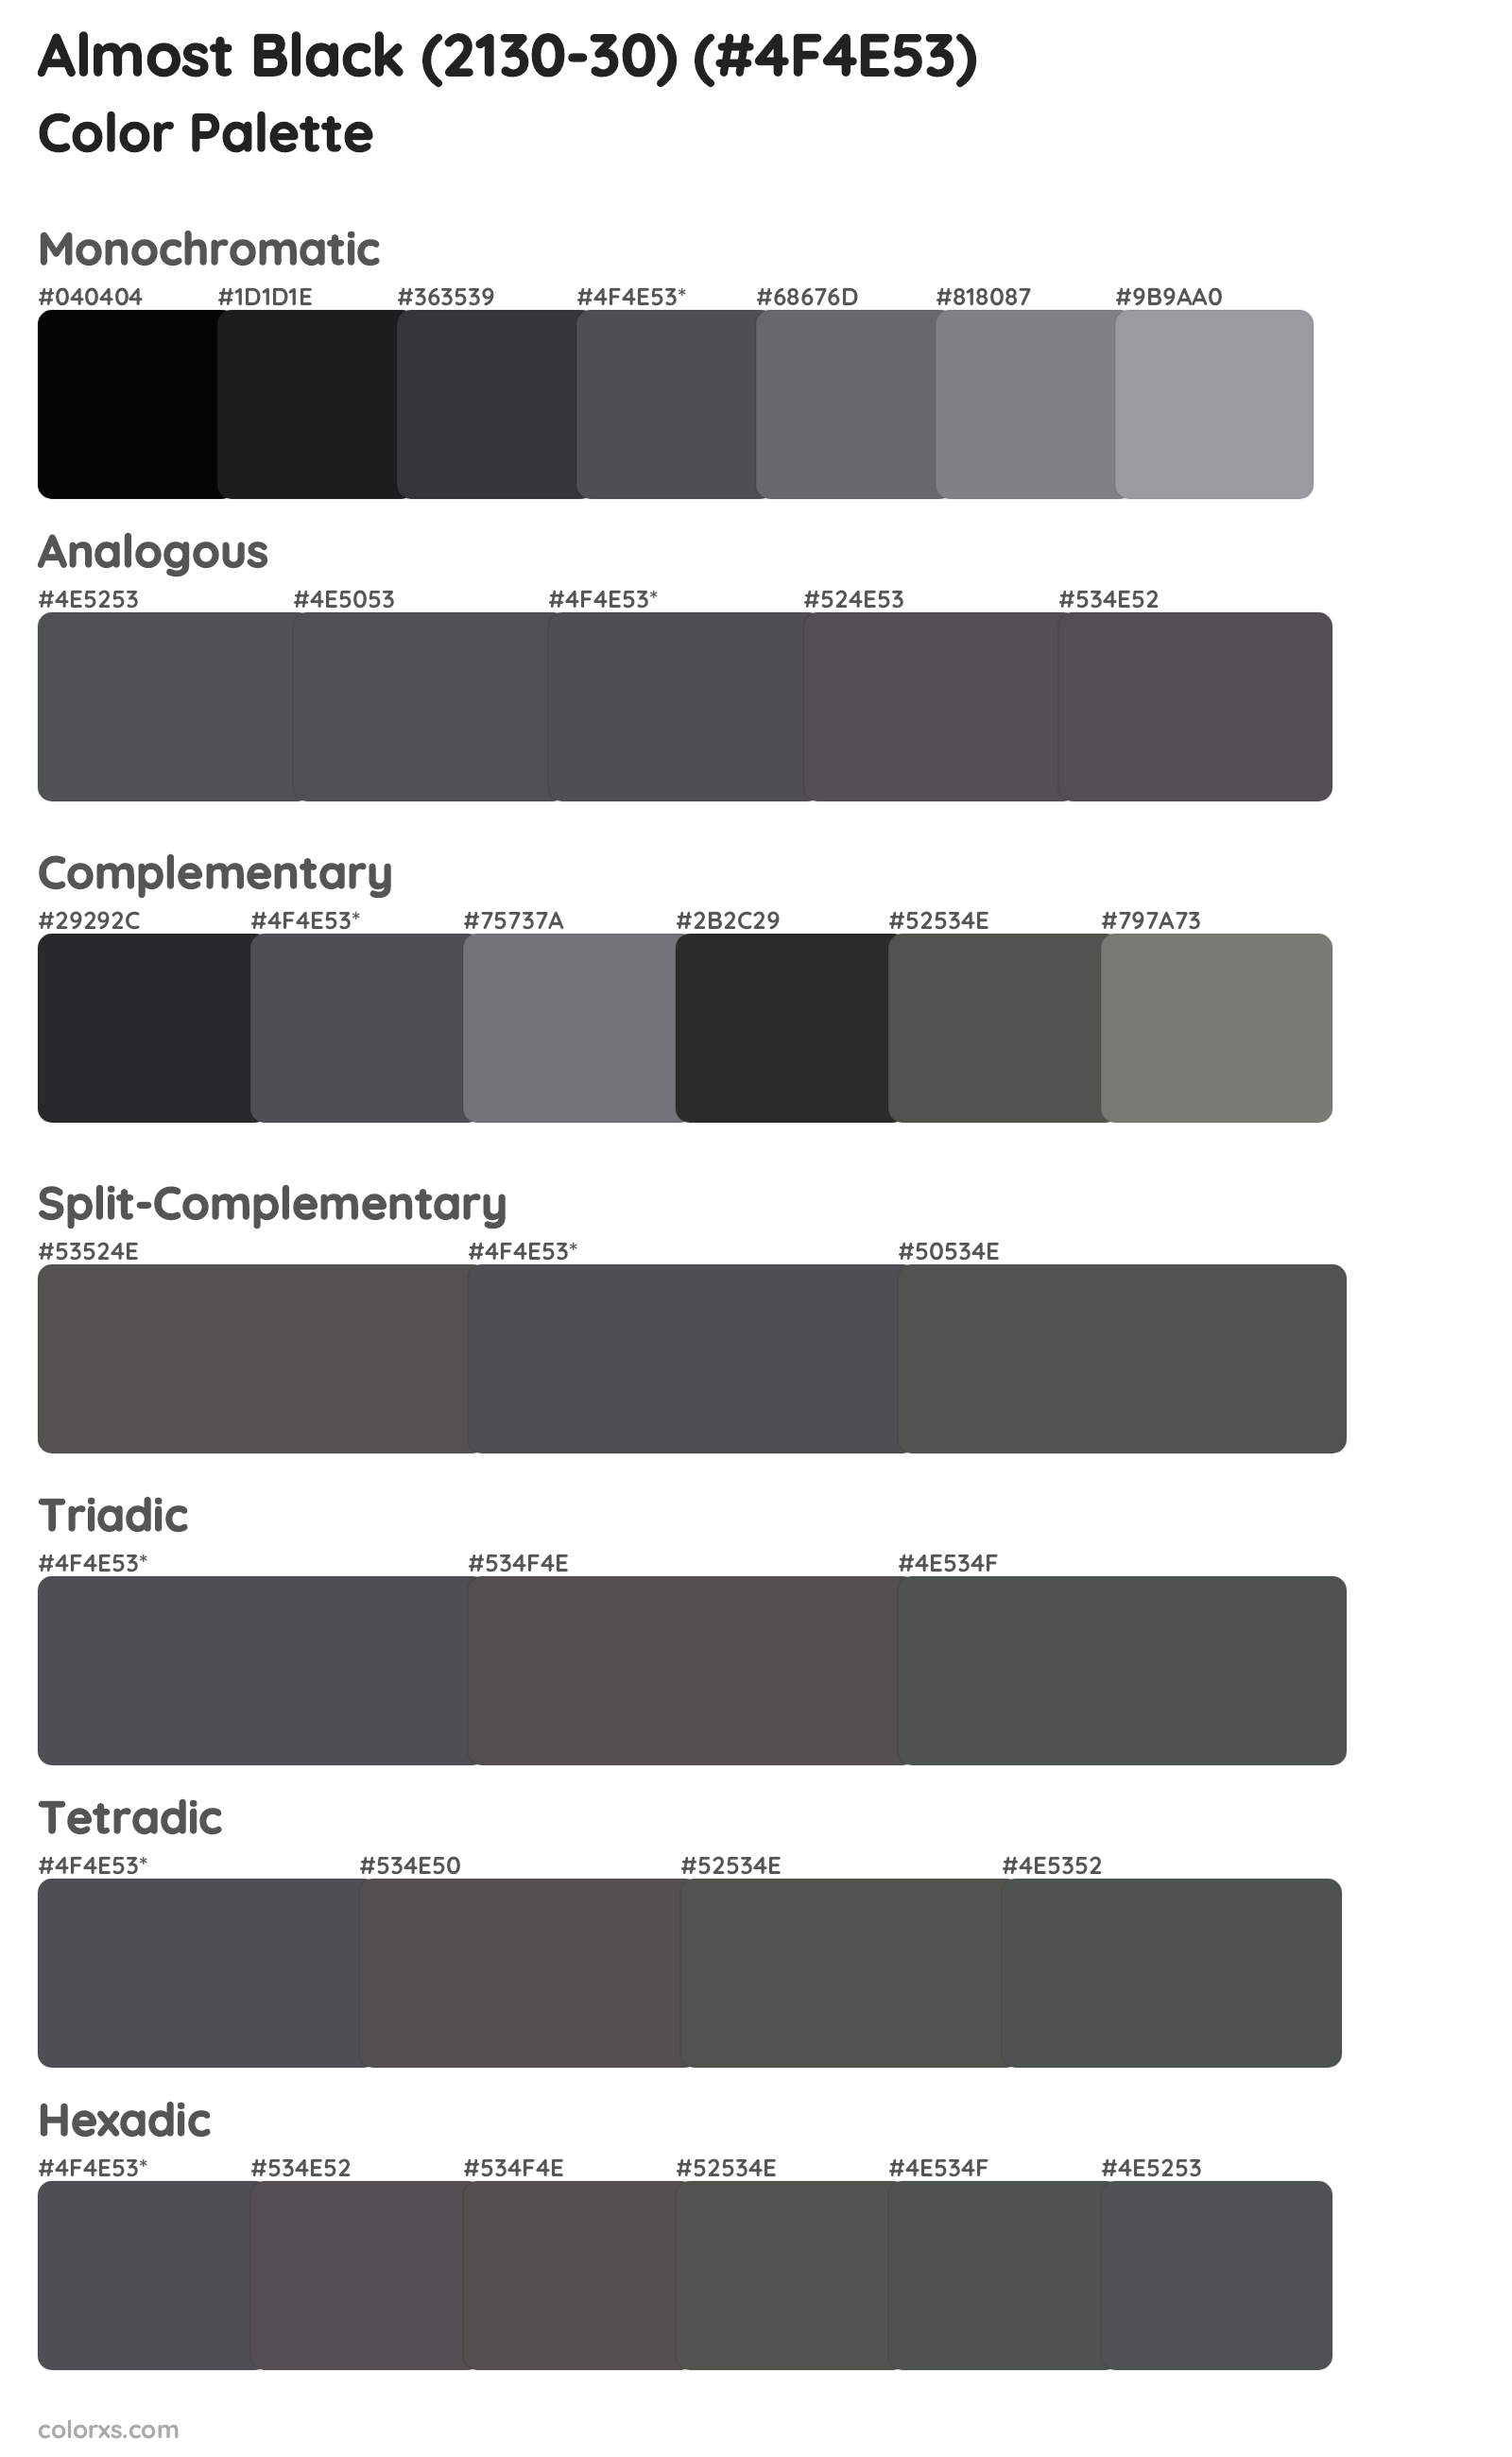 Almost Black (2130-30) Color Scheme Palettes